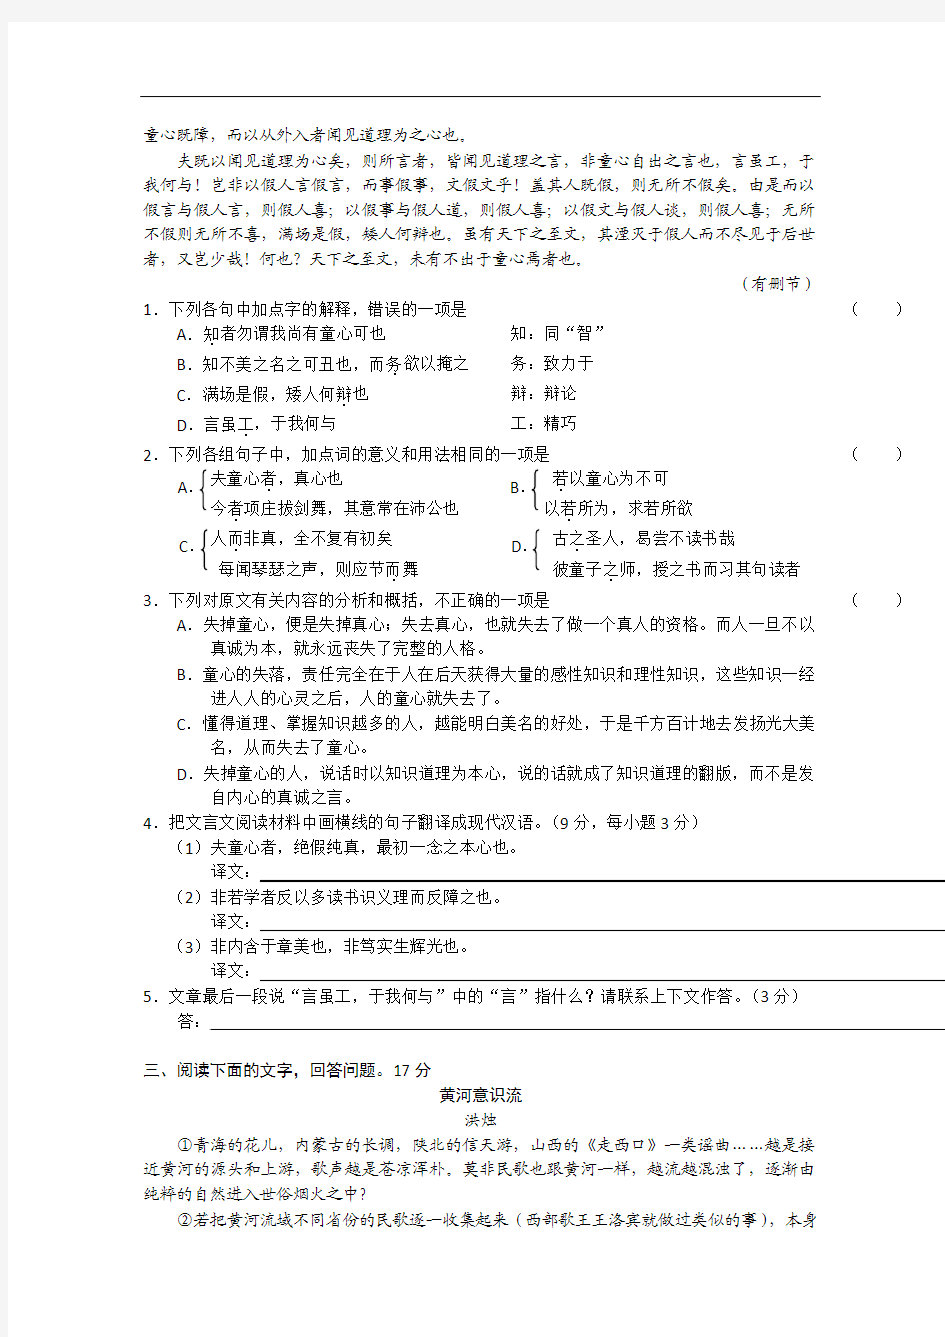 2013年高三备考语文“好题速递”系列试题(24))